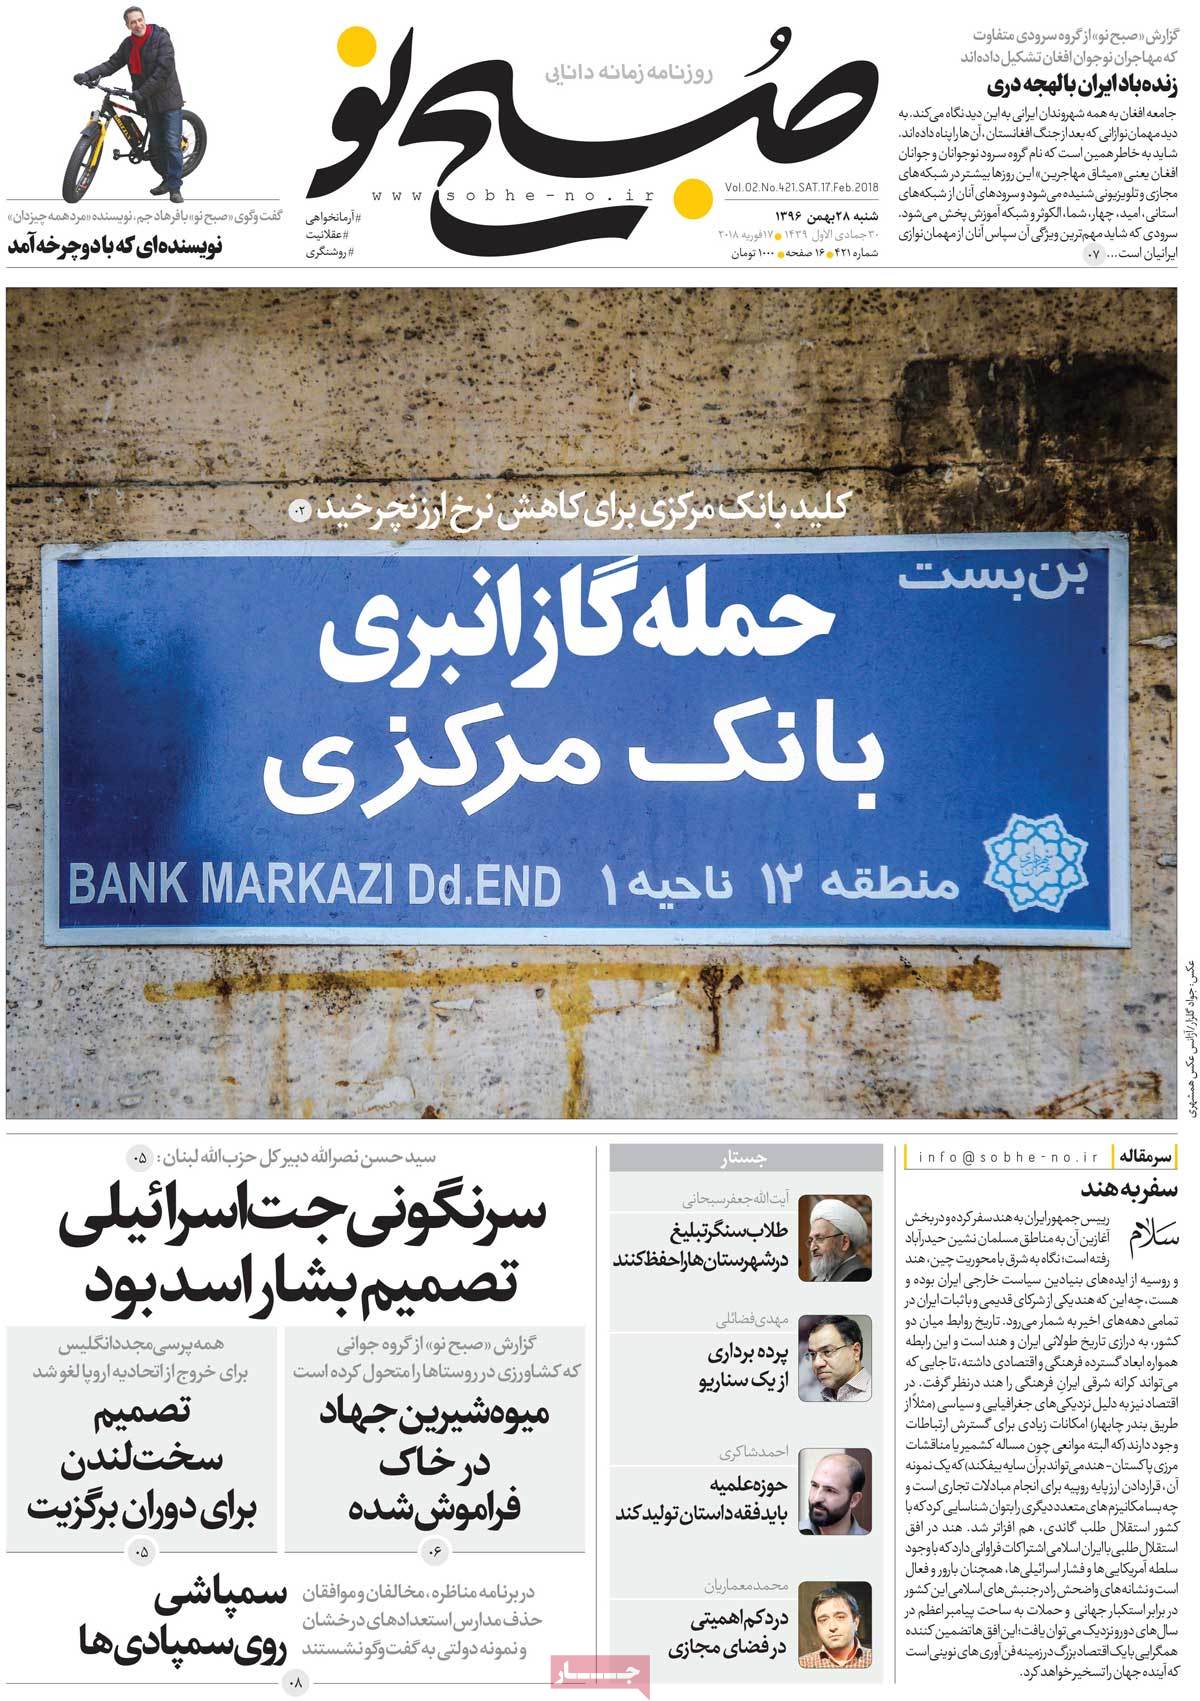 تیتر و عکس جذاب روزنامه صبح نو در مورد اقدام بانک مرکزی برای کاهش نرخ ارز